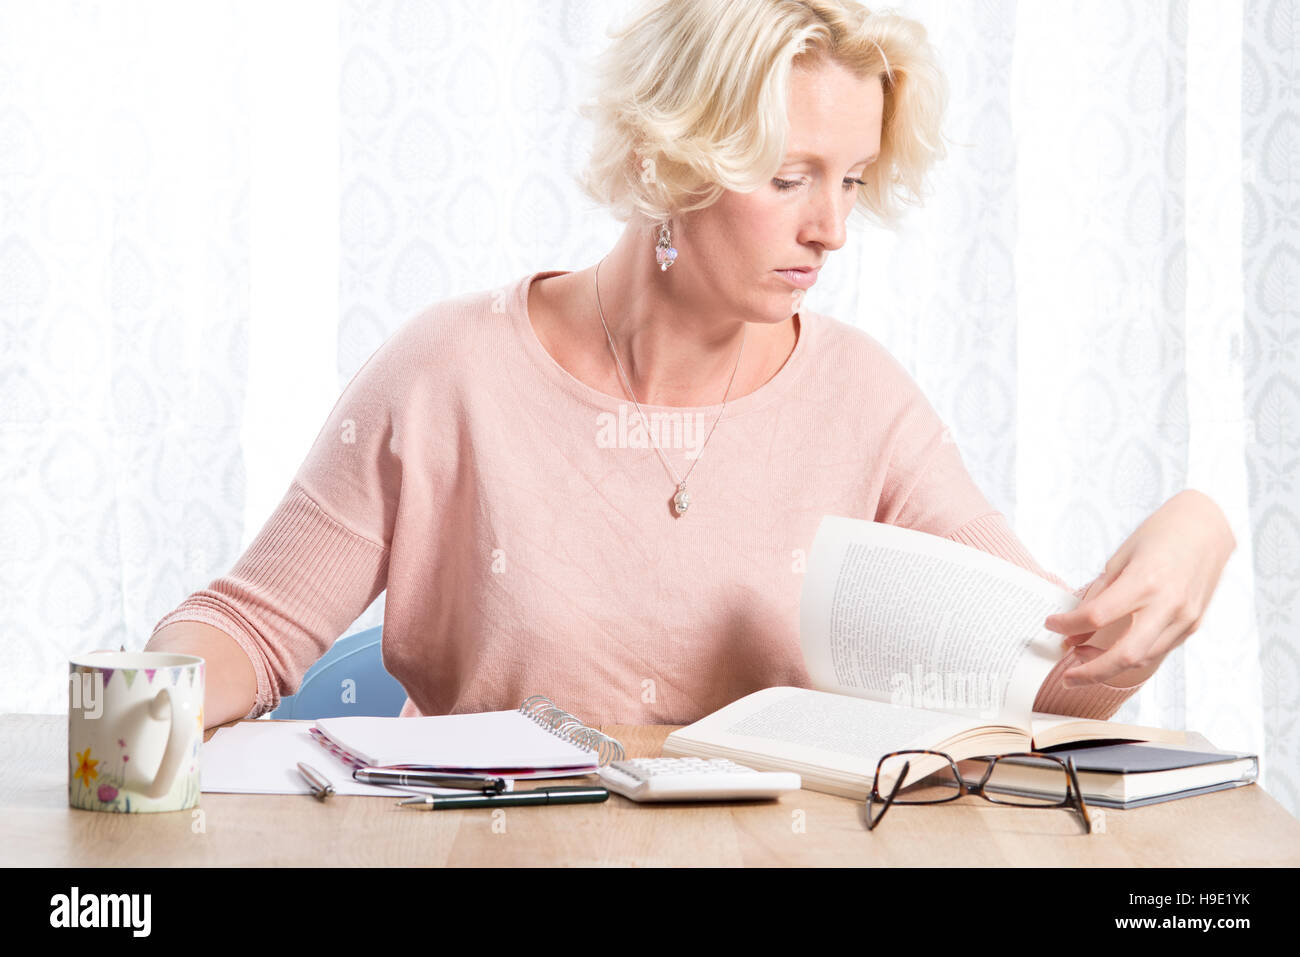 Eine blonde Frau lässig gekleidet in einen rosa Pullover mit Kette wird die Seite eines Buches bei der Recherche zu arbeiten.  Sie sitzt an einem Schreibtisch aus Holz mit einem Stockfoto